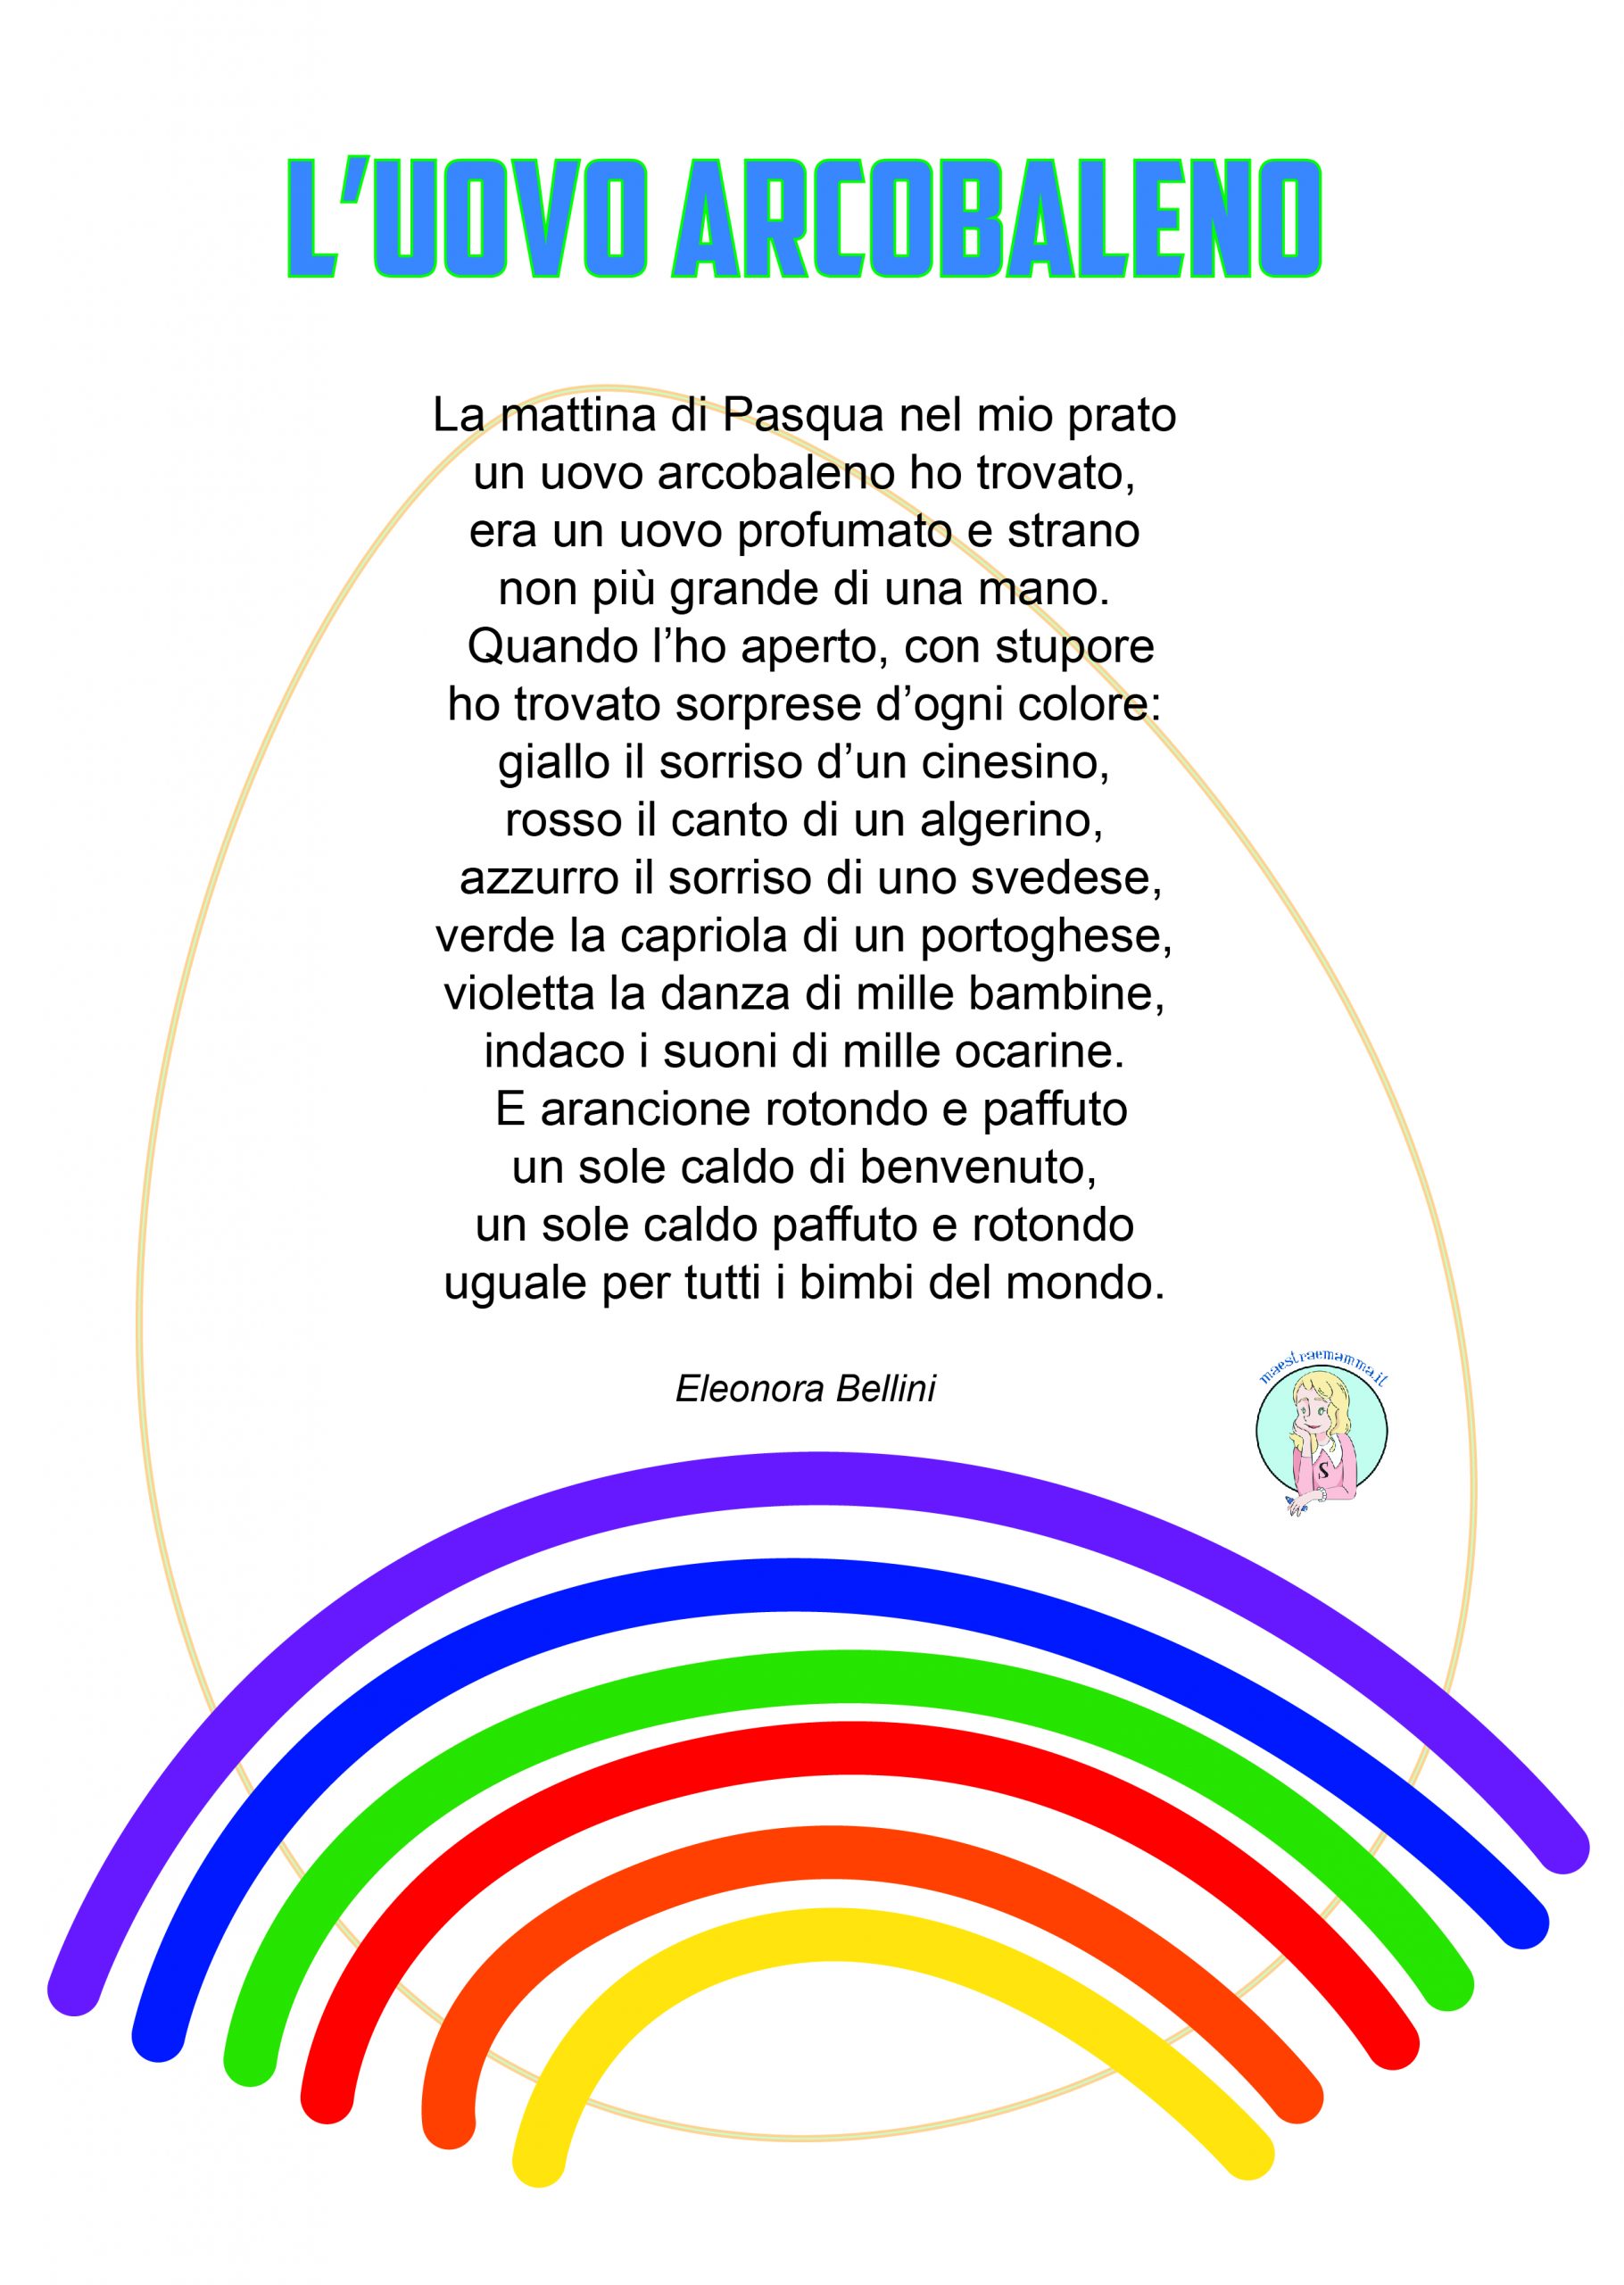 L'uovo arcobaleno - poesia di Pasqua per bambini